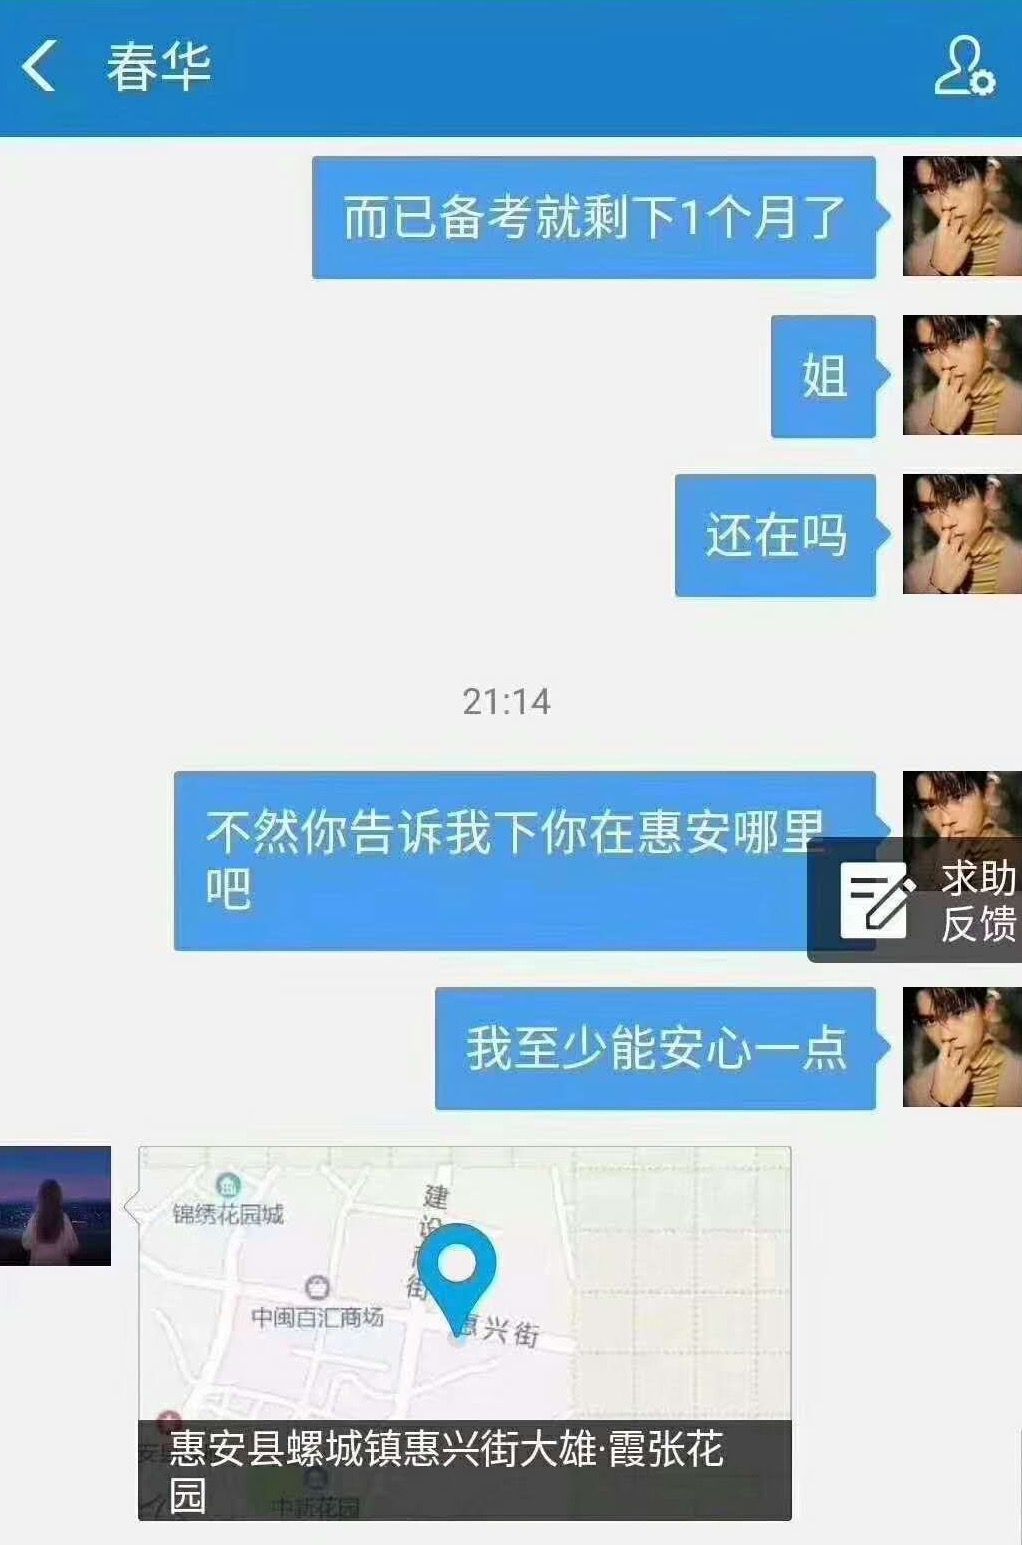  根据陈春华发给家人的手机定位显示：陈春华可能去过泉州惠安，定位为“惠安县螺城镇惠兴街”。  受访者供图